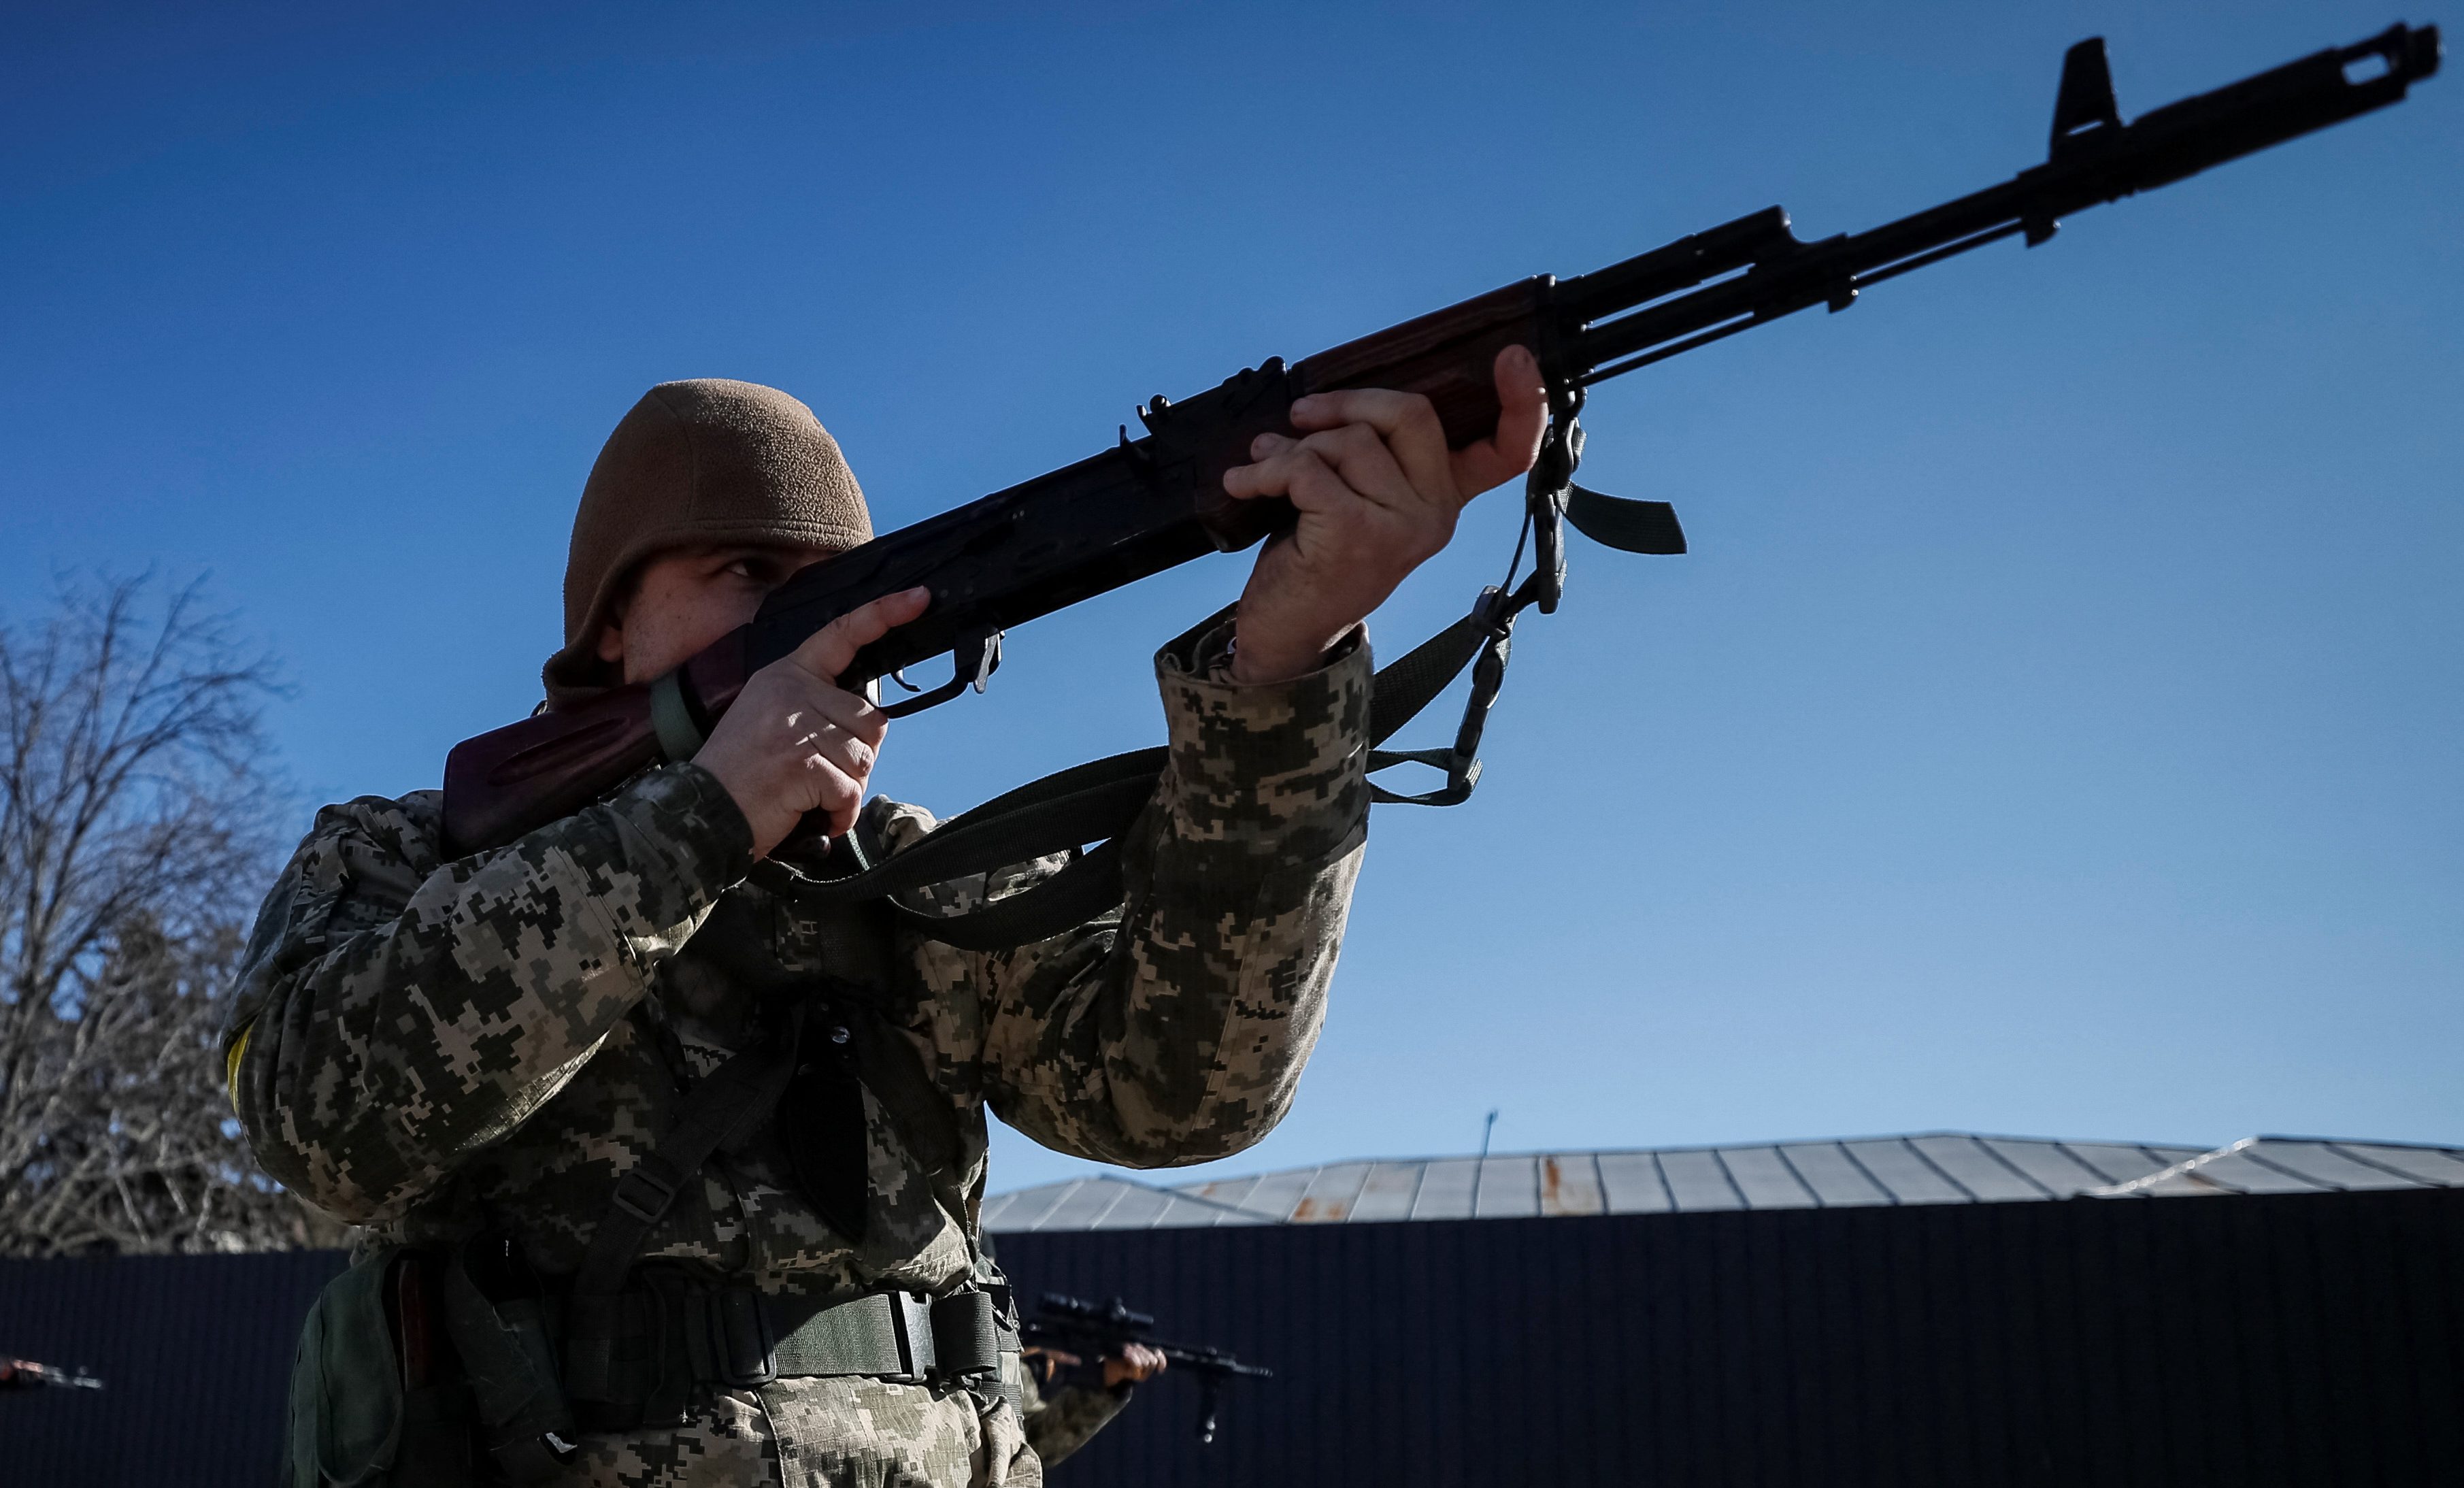 I nuovi membri delle forze di difesa territoriale ucraine si addestrano con armi appena ricevute